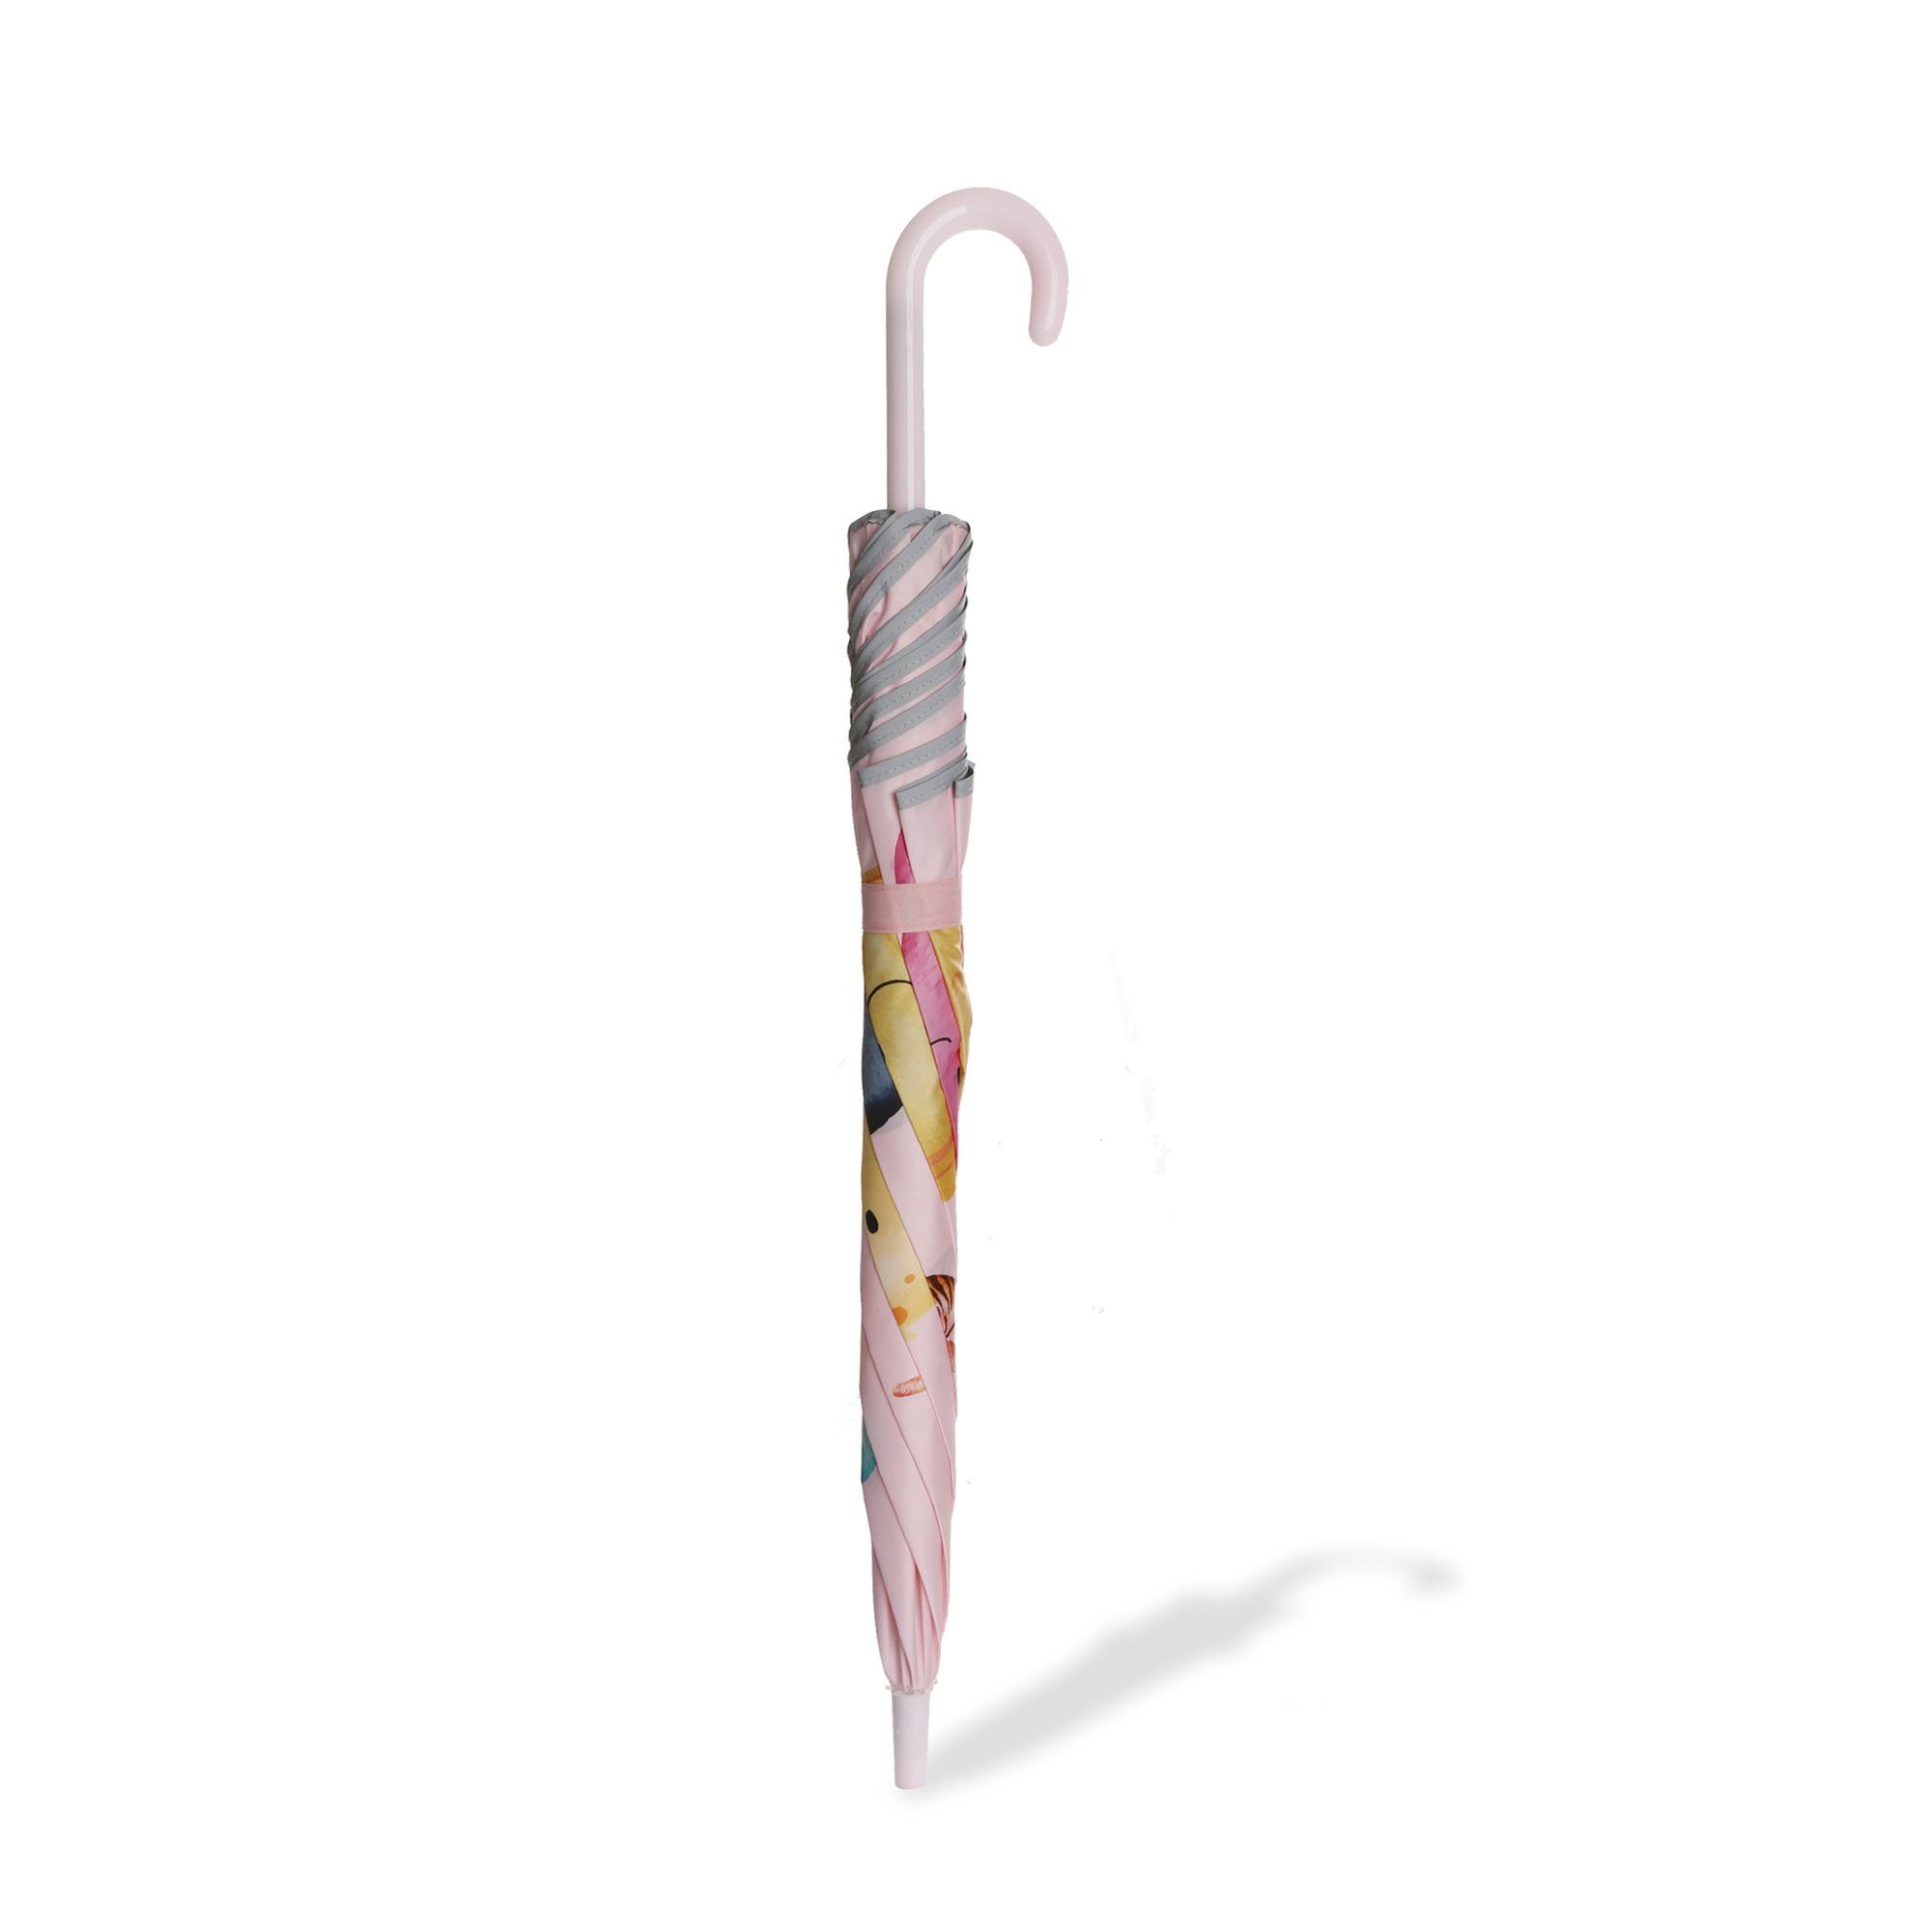 Taschenregenschirm Krabbe reflektierend rosa Seestern maritim Sonia Fische Kinder Regenschirm Originelli